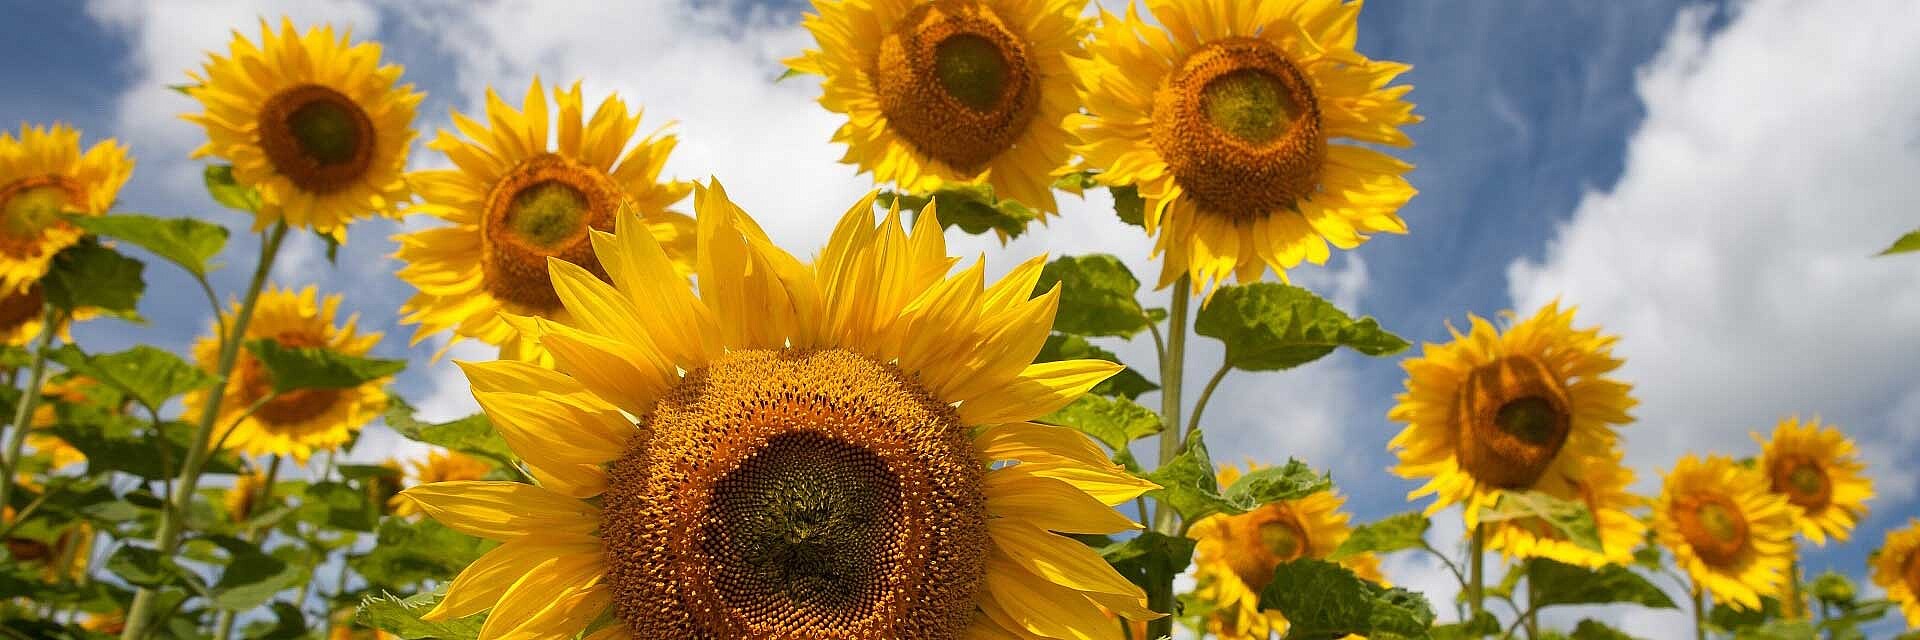 Strube Saatzucht Produkte Sonnenblume